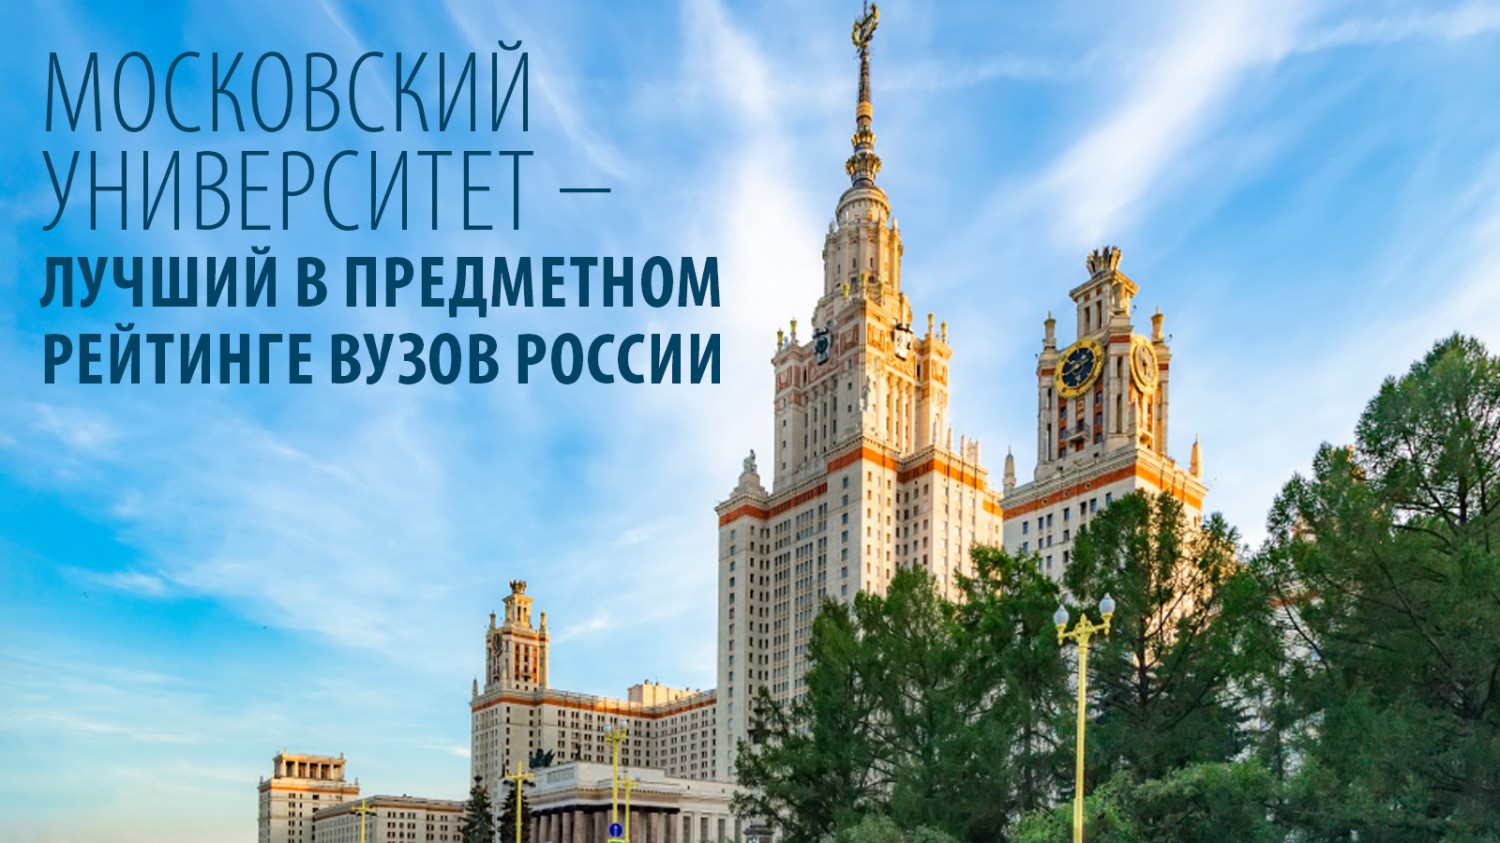 Московский университет – лучший в предметном рейтинге вузов России